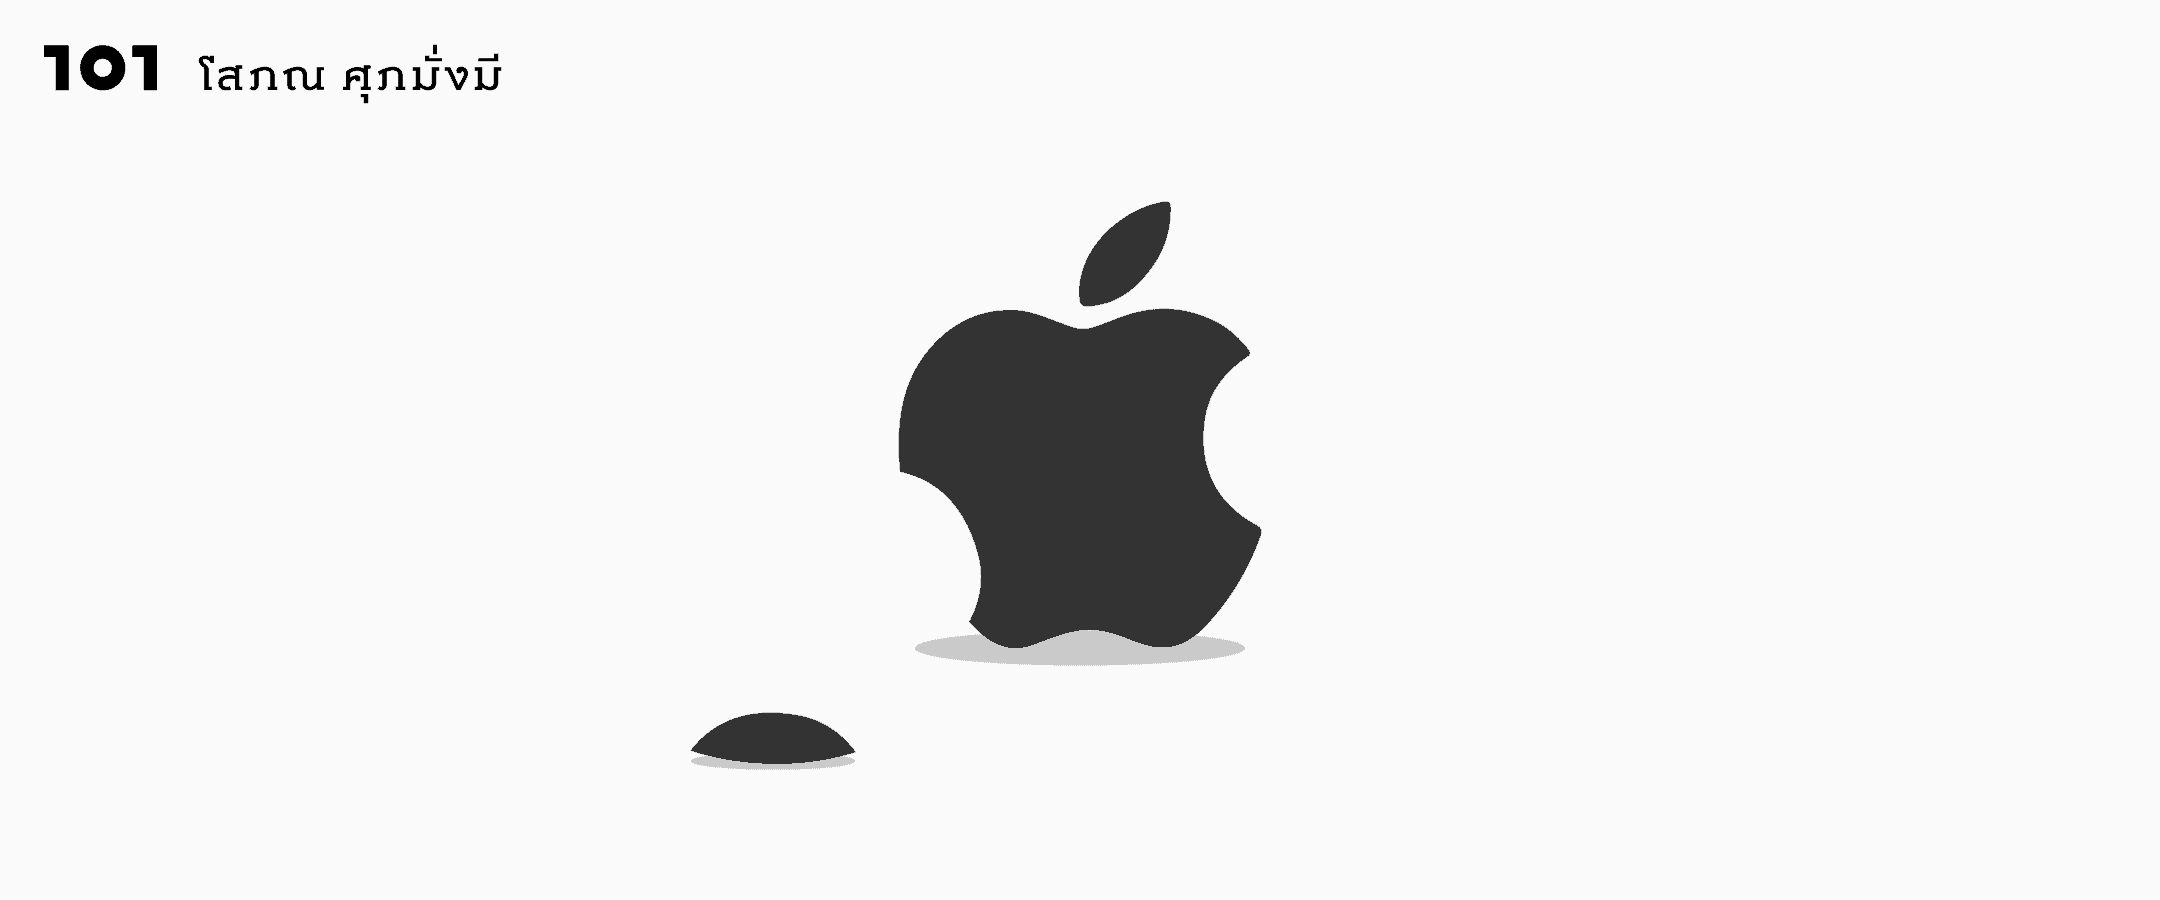 ทุกอย่างมีเวลาของมัน, เมื่อ Jony Ive ตัดสินใจแยกทางกับ Apple